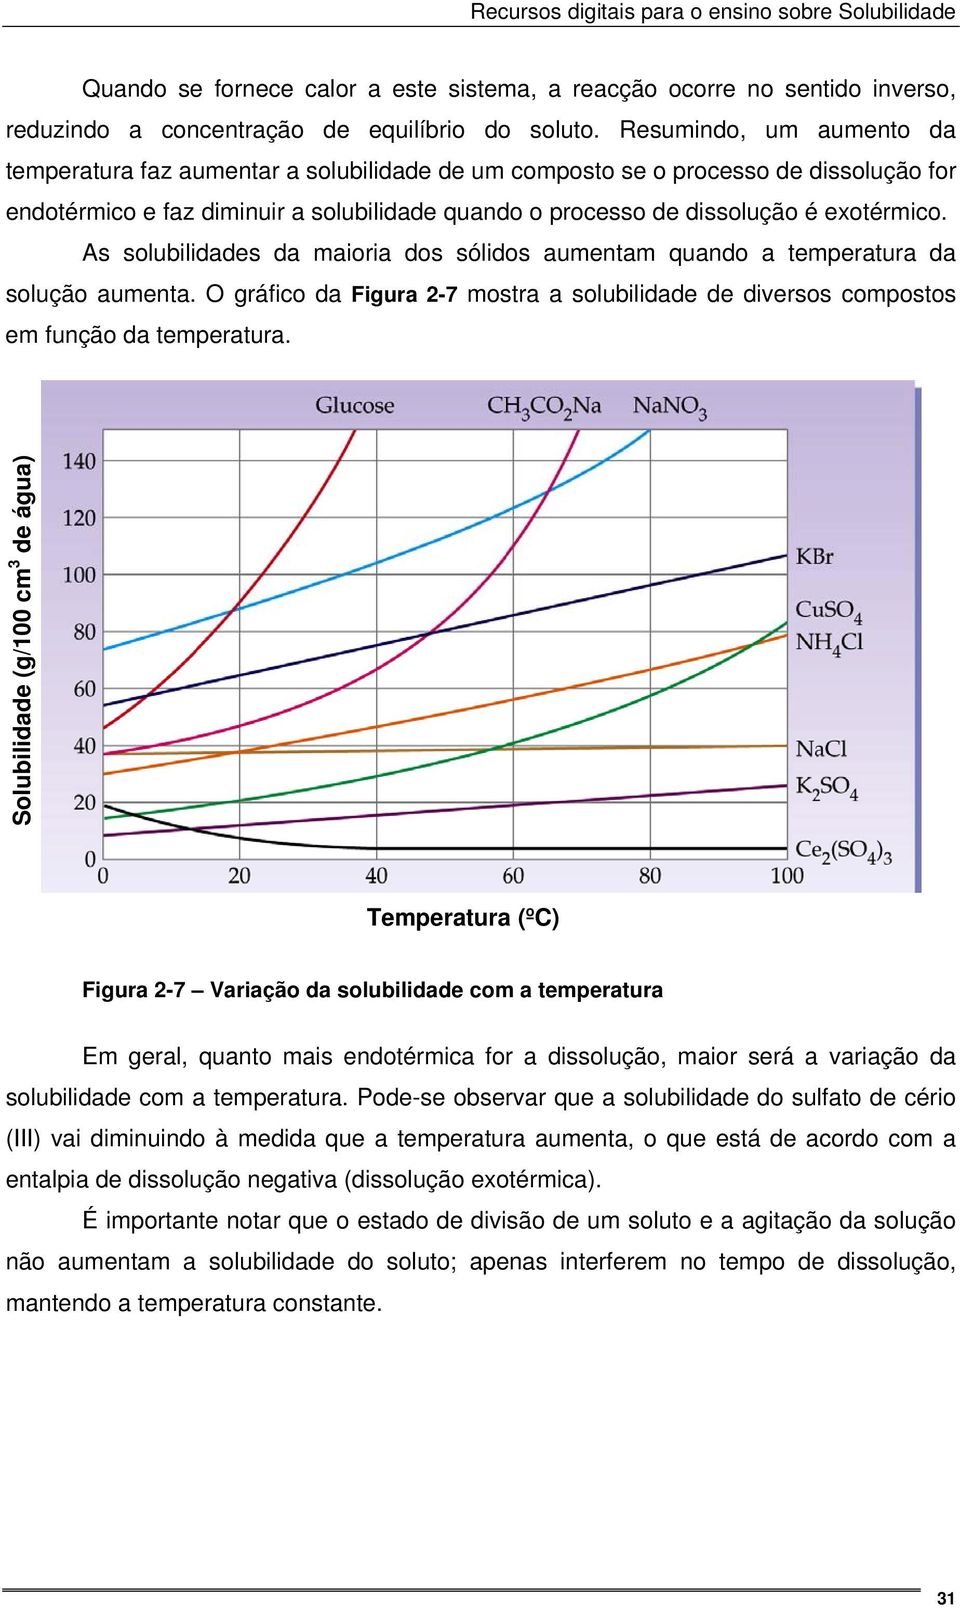 As solubilidades da maioria dos sólidos aumentam quando a temperatura da solução aumenta. O gráfico da Figura 2-7 mostra a solubilidade de diversos compostos em função da temperatura.